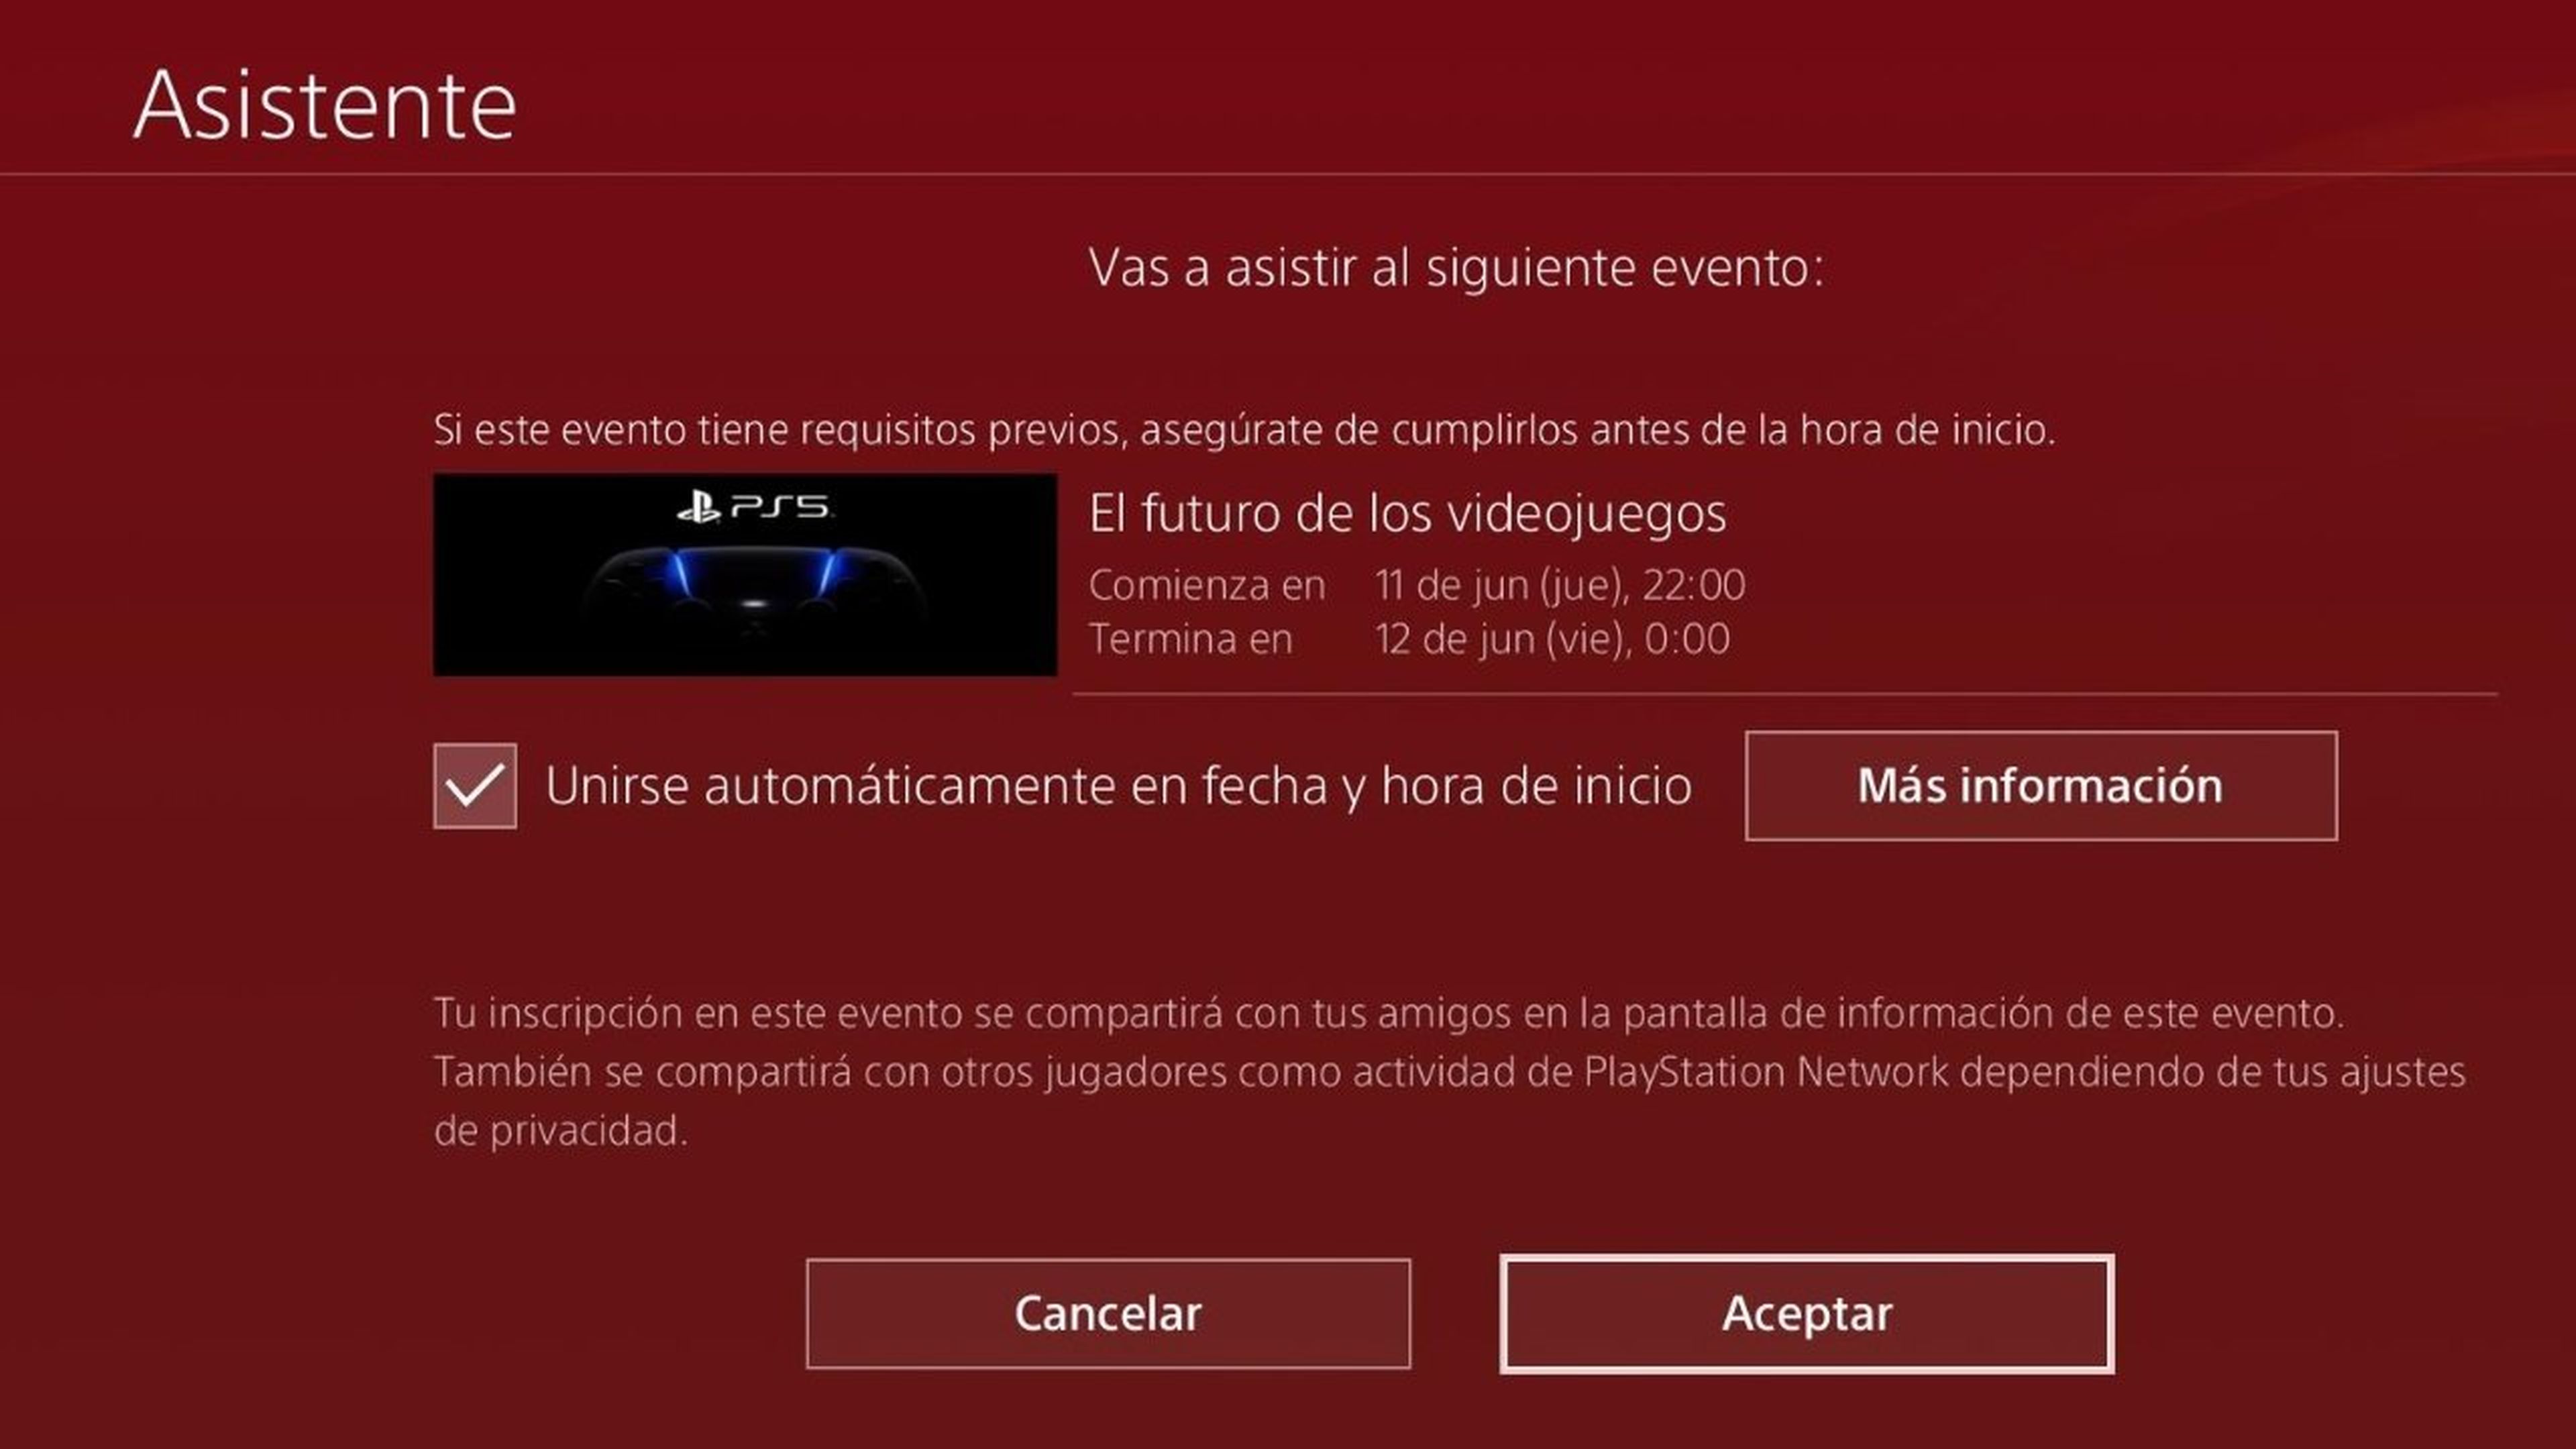 Presentación de PS5 en PS4